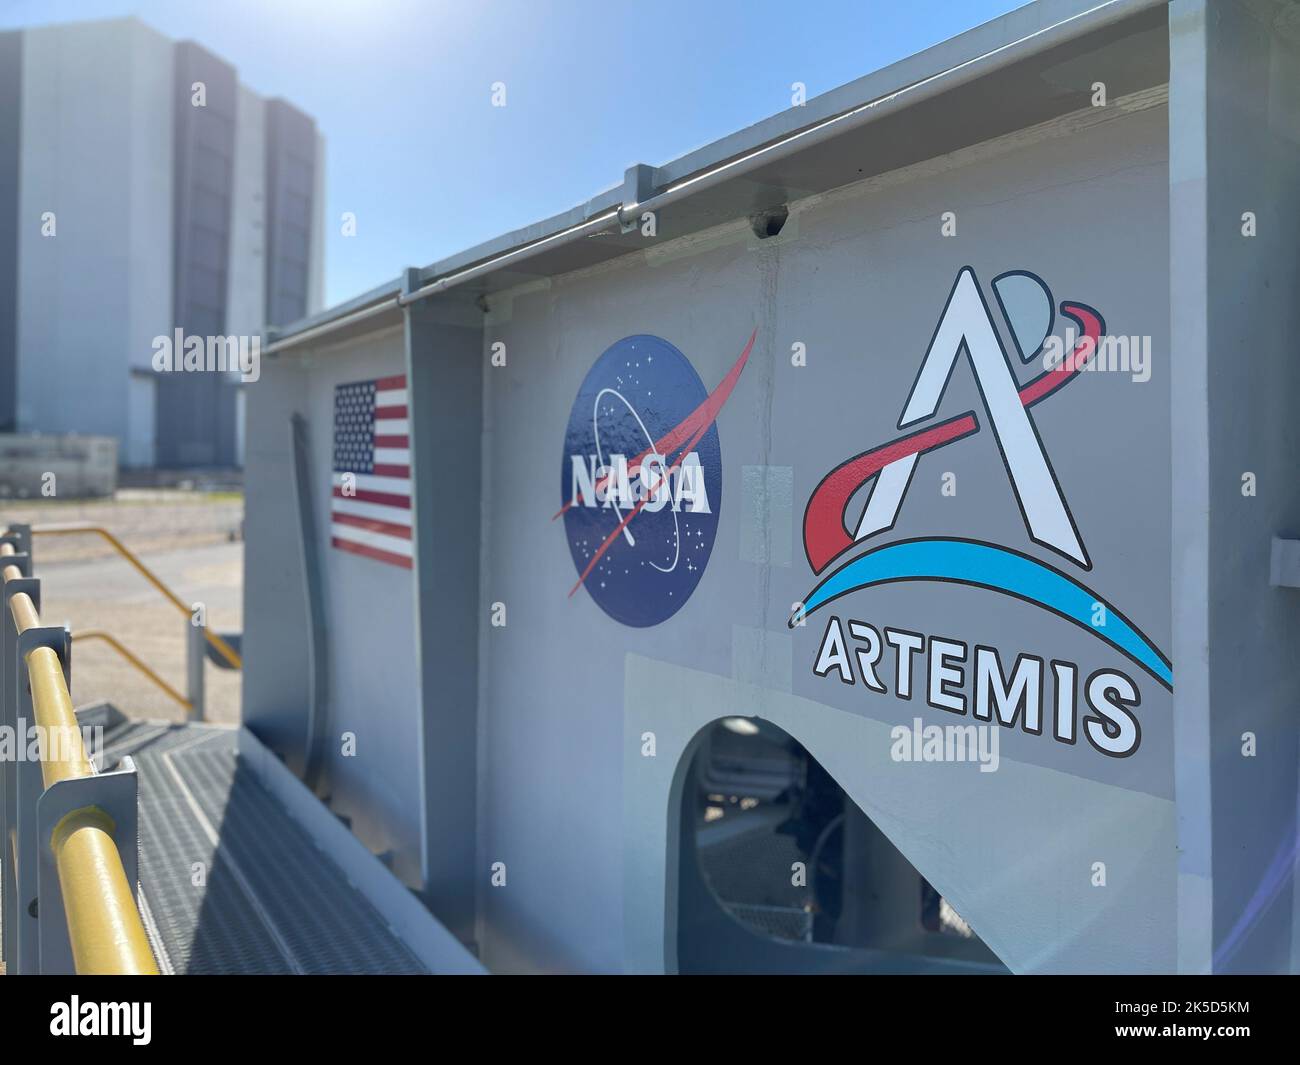 Huit nouveaux logos Artemis de la NASA (quatre grands, quatre petits) ont été installés sur Crawler-transporter 2 au Centre spatial Kennedy en vue du lancement prochain d'Artemis I. nommé d'après la sœur jumelle d'Apollon, Artemis est la Déesse de la Lune. Les missions d'Artemis rateront l'humanité vers la Lune et au-delà, en commençant un nouvel héritage d'exploration spatiale profonde. Banque D'Images